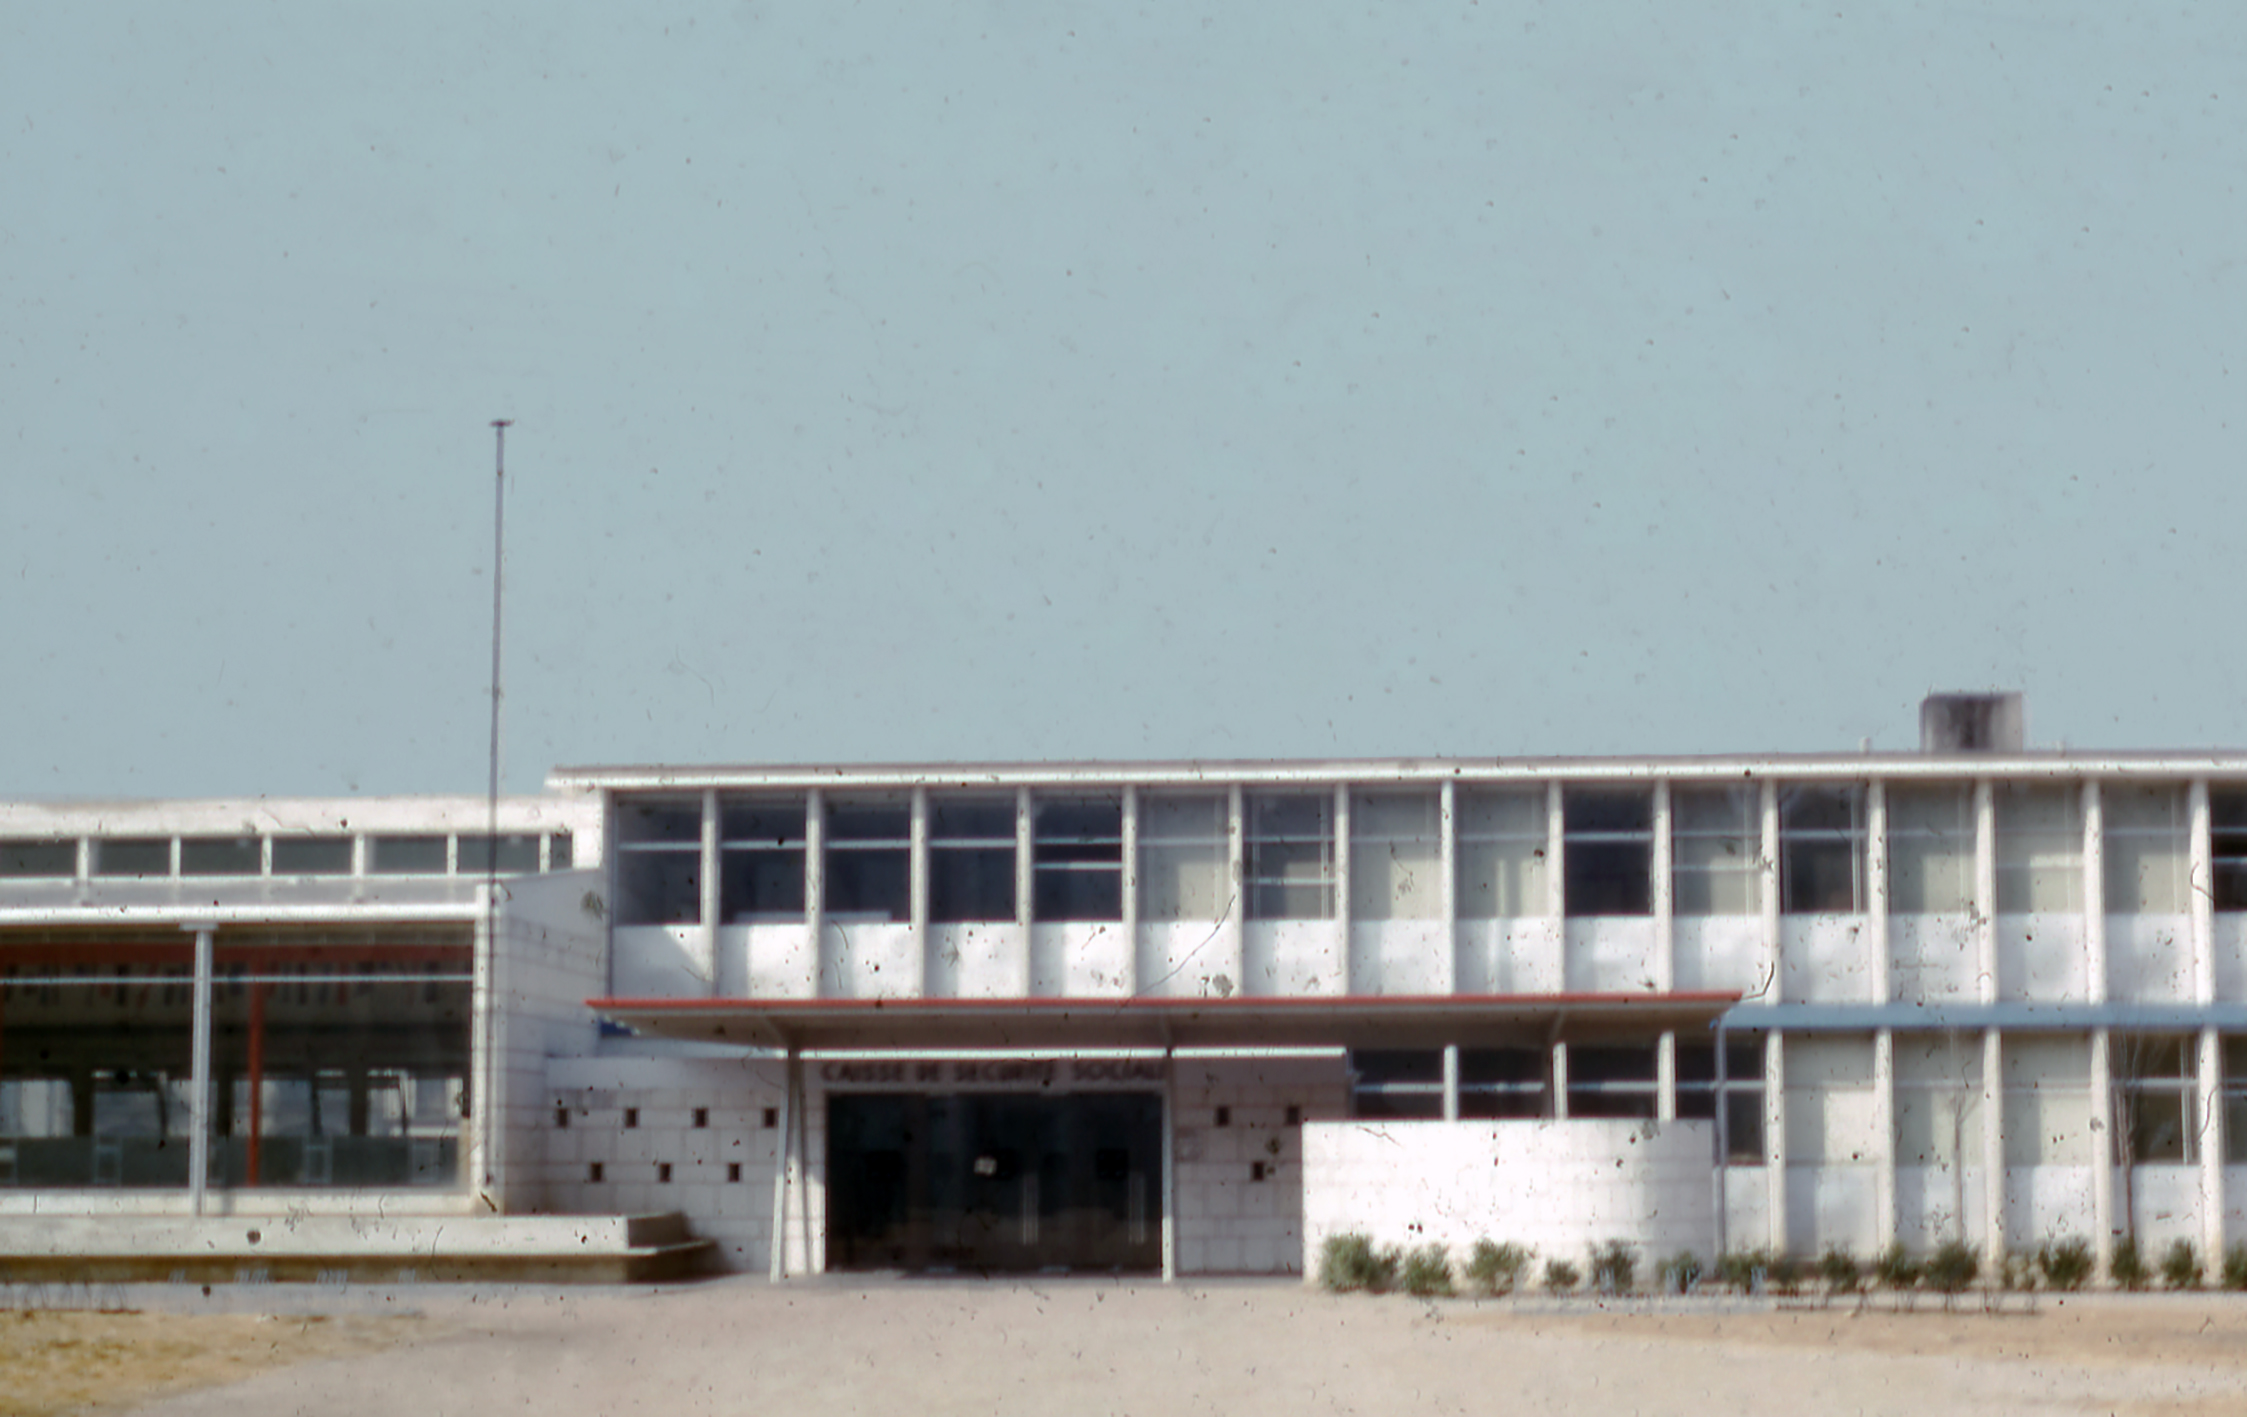 Immeuble de la Sécurité sociale, Le Mans (J. Le Couteur, arch., 1951). Auvent de l’entrée du bâtiment en tôle d’acier pliée conçu par Jean Prouvé, 1953-1954.